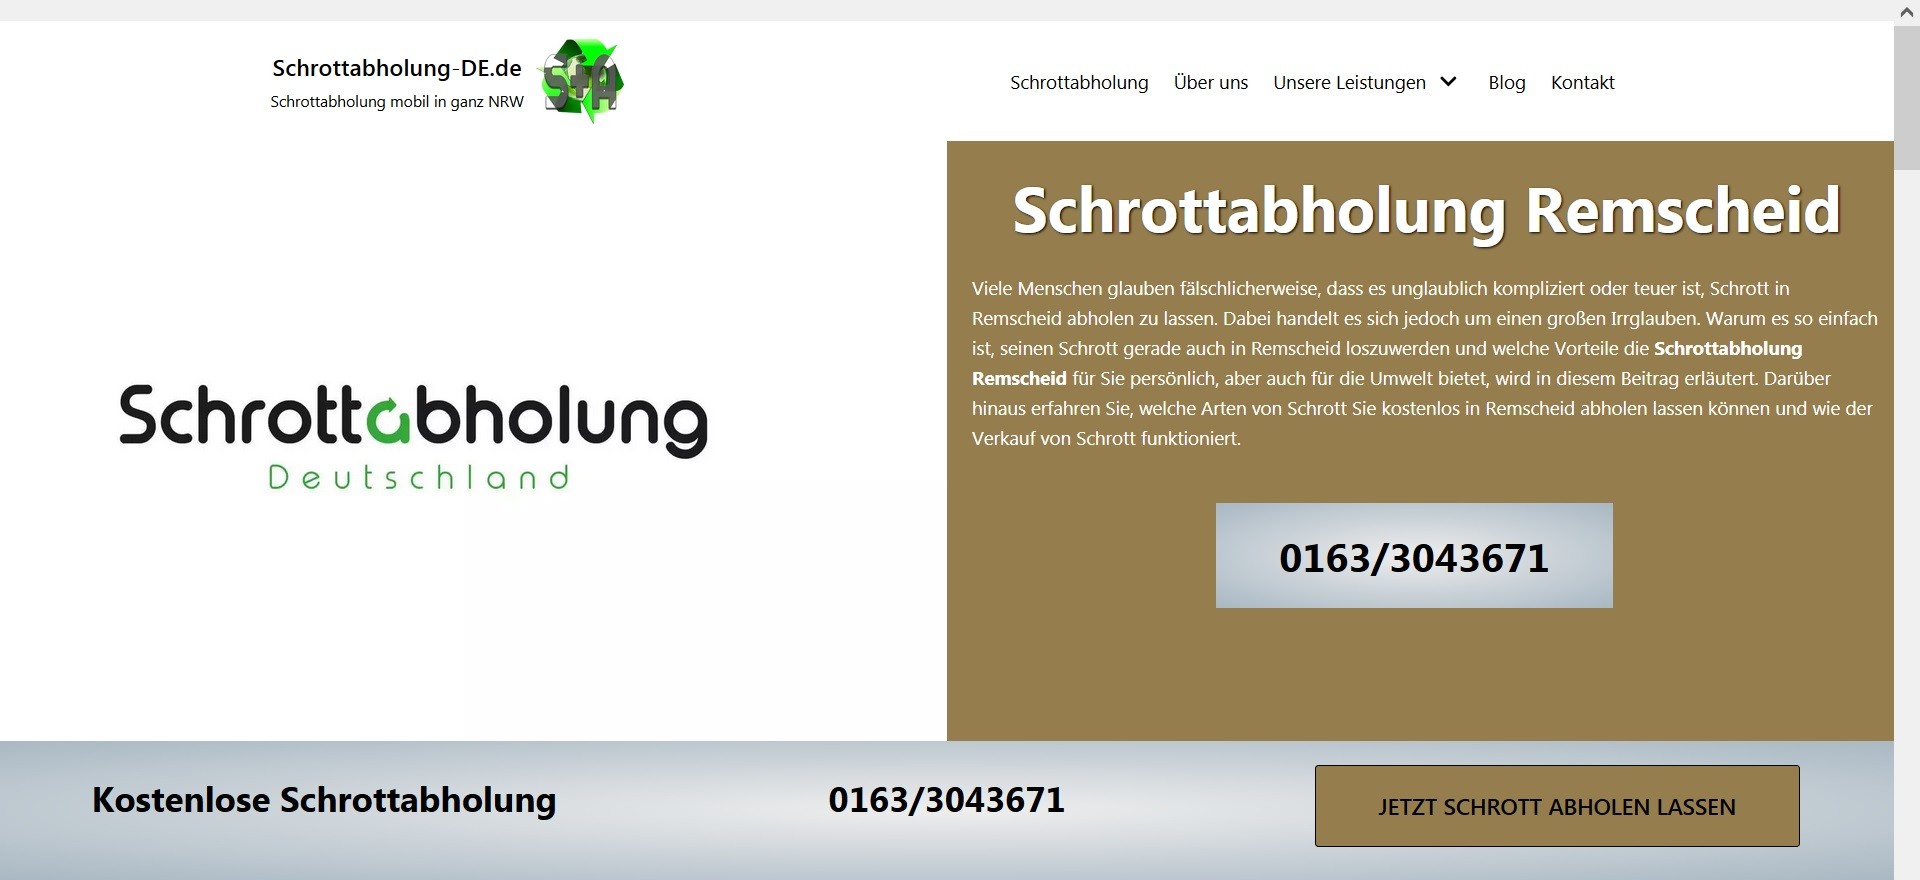 Kostenlose Schrottabholung in ganz Nordrhein-Westfalen - Online Altmetall verkaufen Bottrop